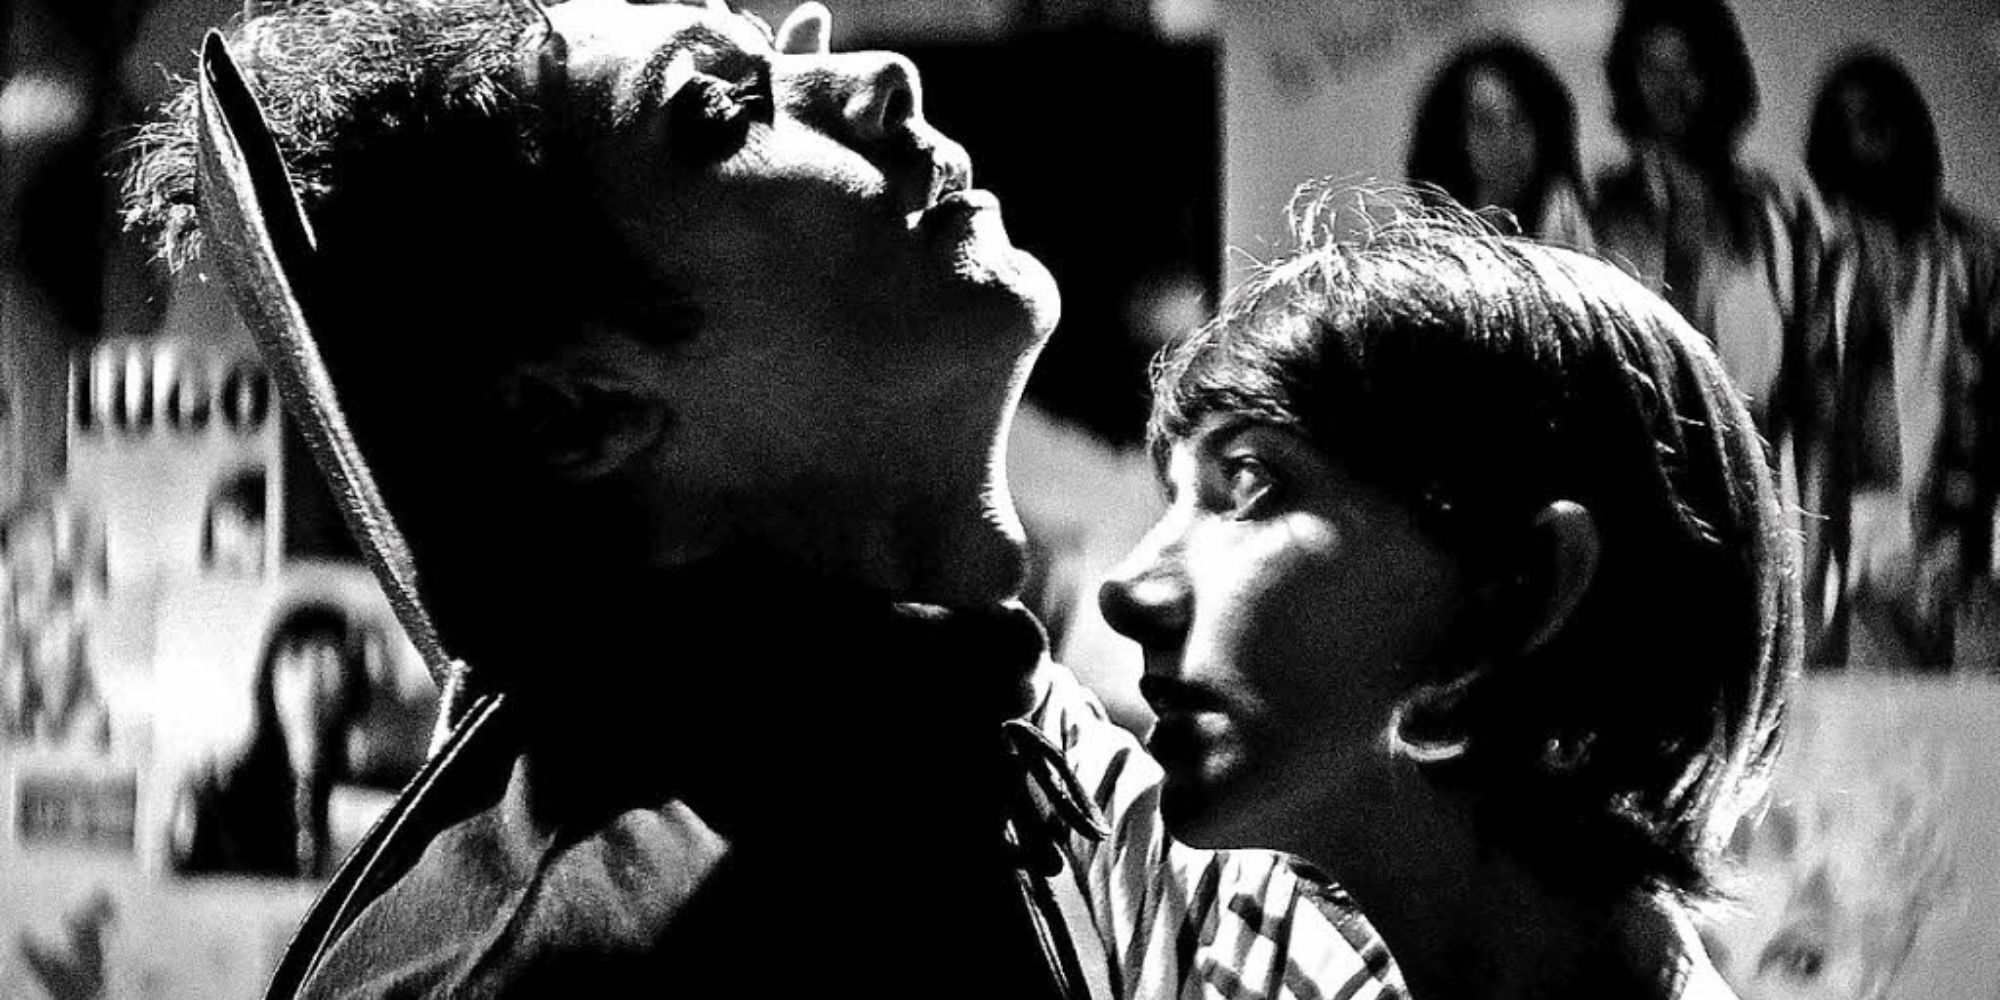 Imagem em preto e branco de uma adolescente cheirando o pescoço de um adolescente vestido de vampiro